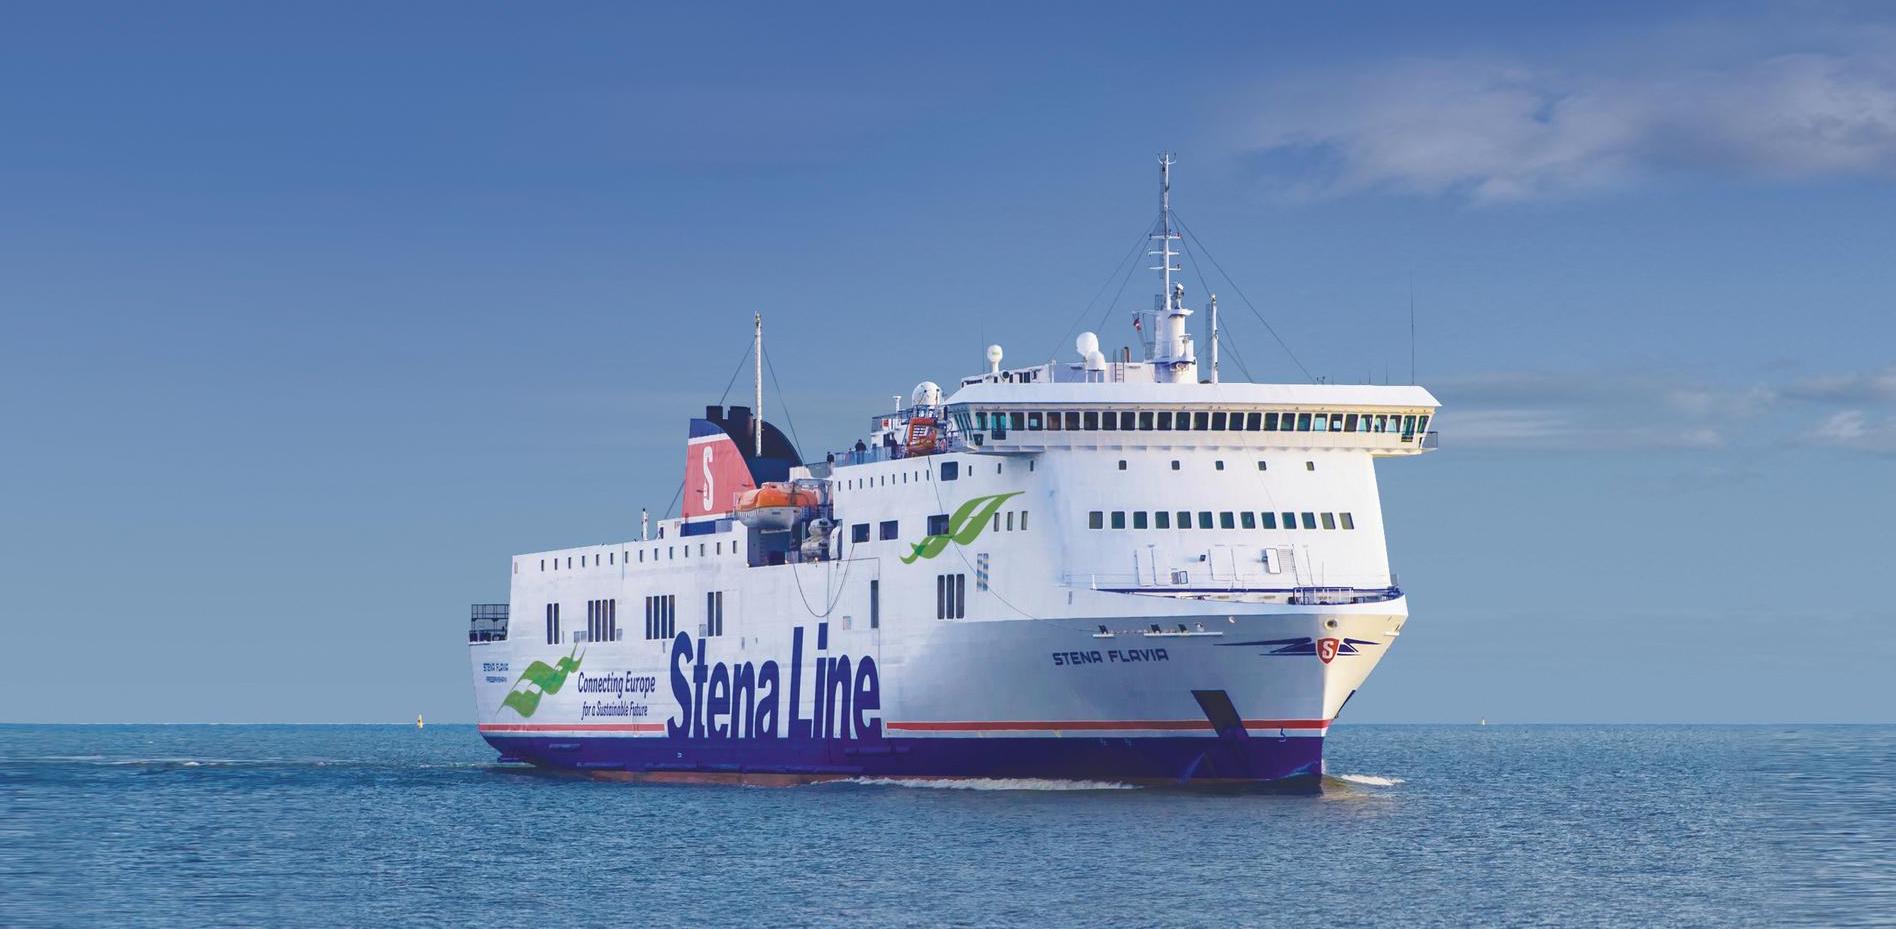 Photo of Stena Line - Stena Flavia ship